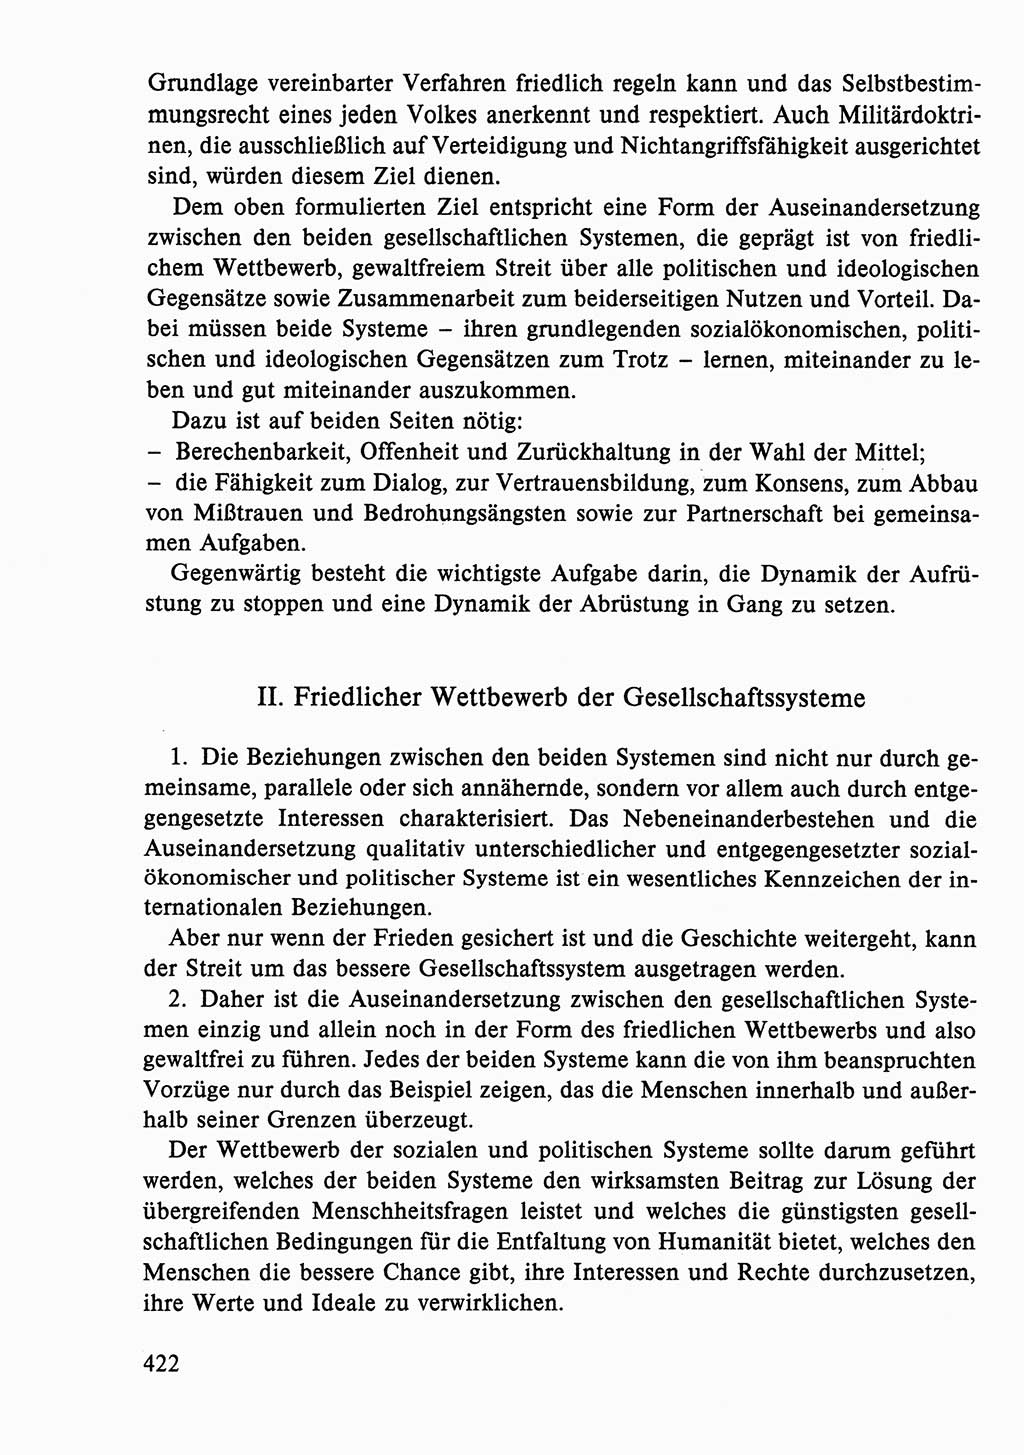 Dokumente der Sozialistischen Einheitspartei Deutschlands (SED) [Deutsche Demokratische Republik (DDR)] 1986-1987, Seite 422 (Dok. SED DDR 1986-1987, S. 422)